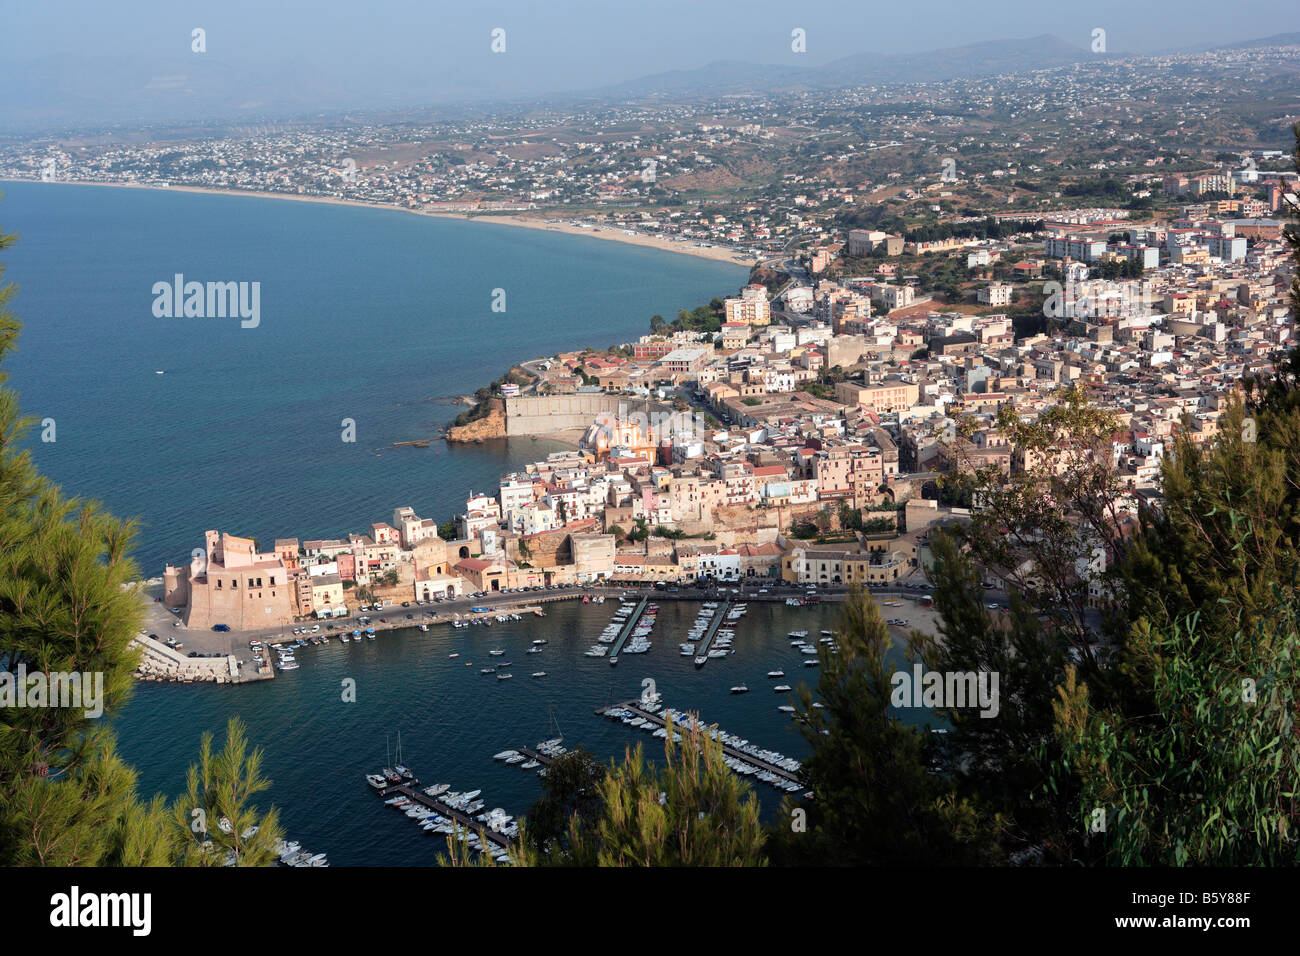 Castellamare del Golfo, Sicily Stock Photo - Alamy